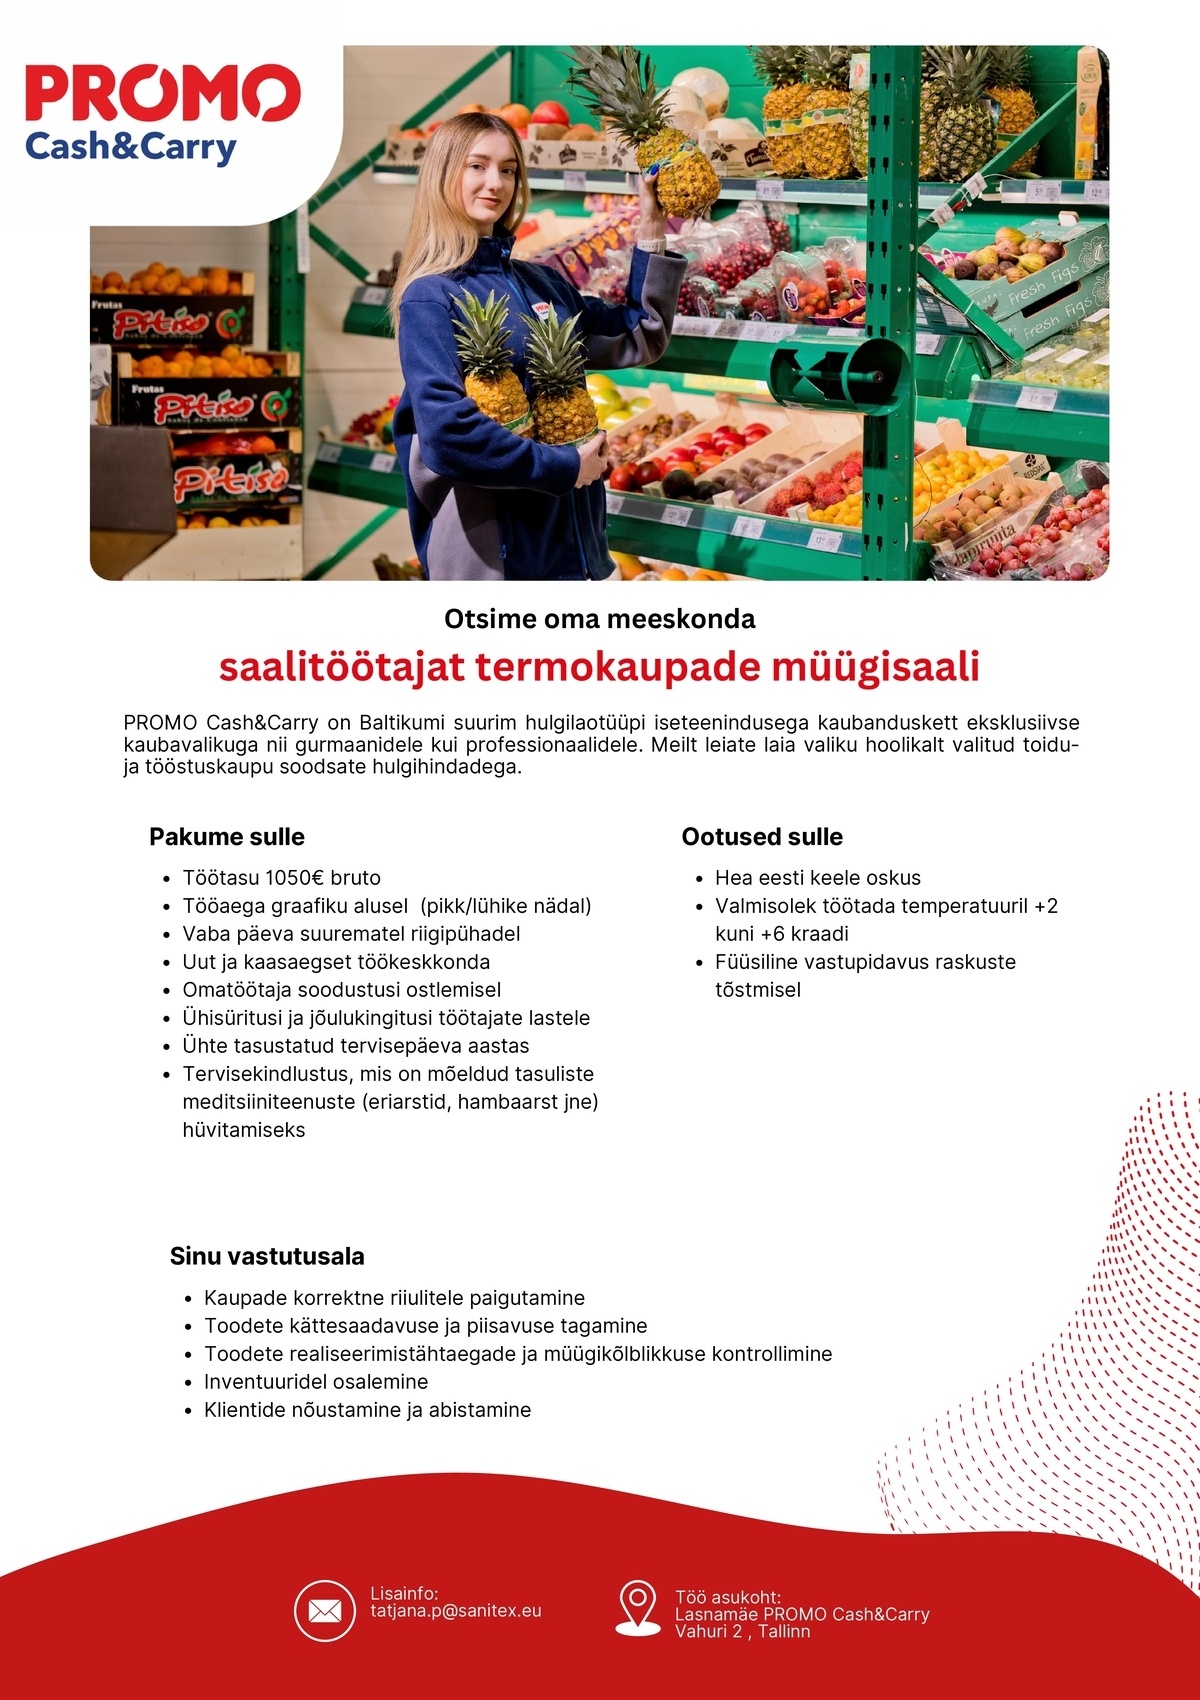 Sanitex OÜ Saalitöötaja termokaupade müügisaalis Lasnamäe Promo Cash&Carry hulgikaupluses